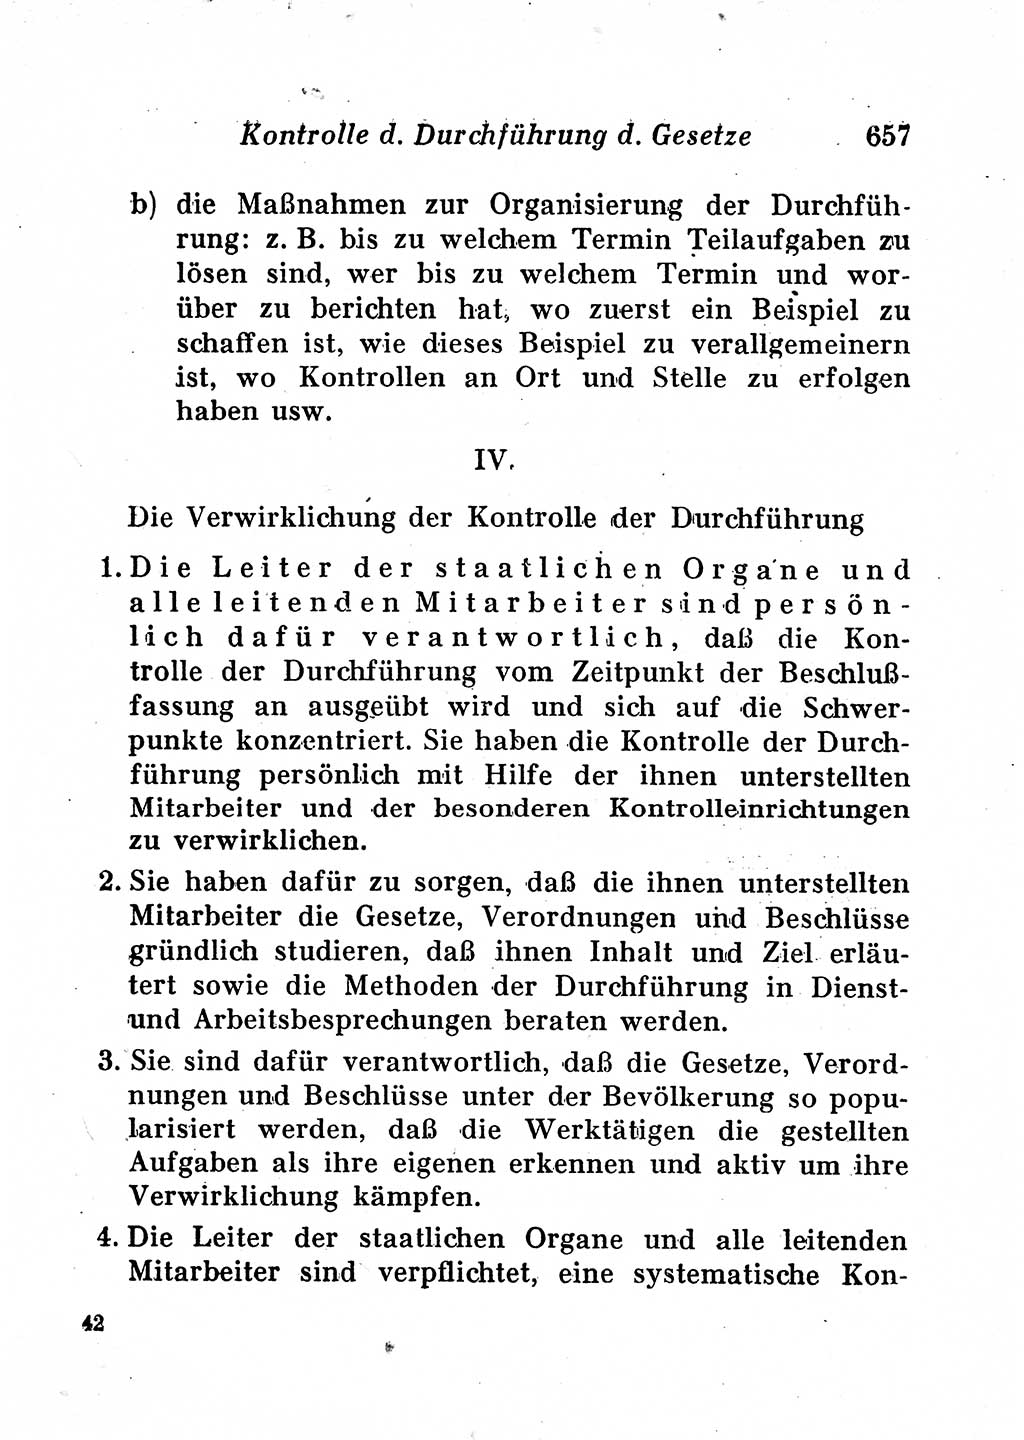 Staats- und verwaltungsrechtliche Gesetze der Deutschen Demokratischen Republik (DDR) 1958, Seite 657 (StVerwR Ges. DDR 1958, S. 657)